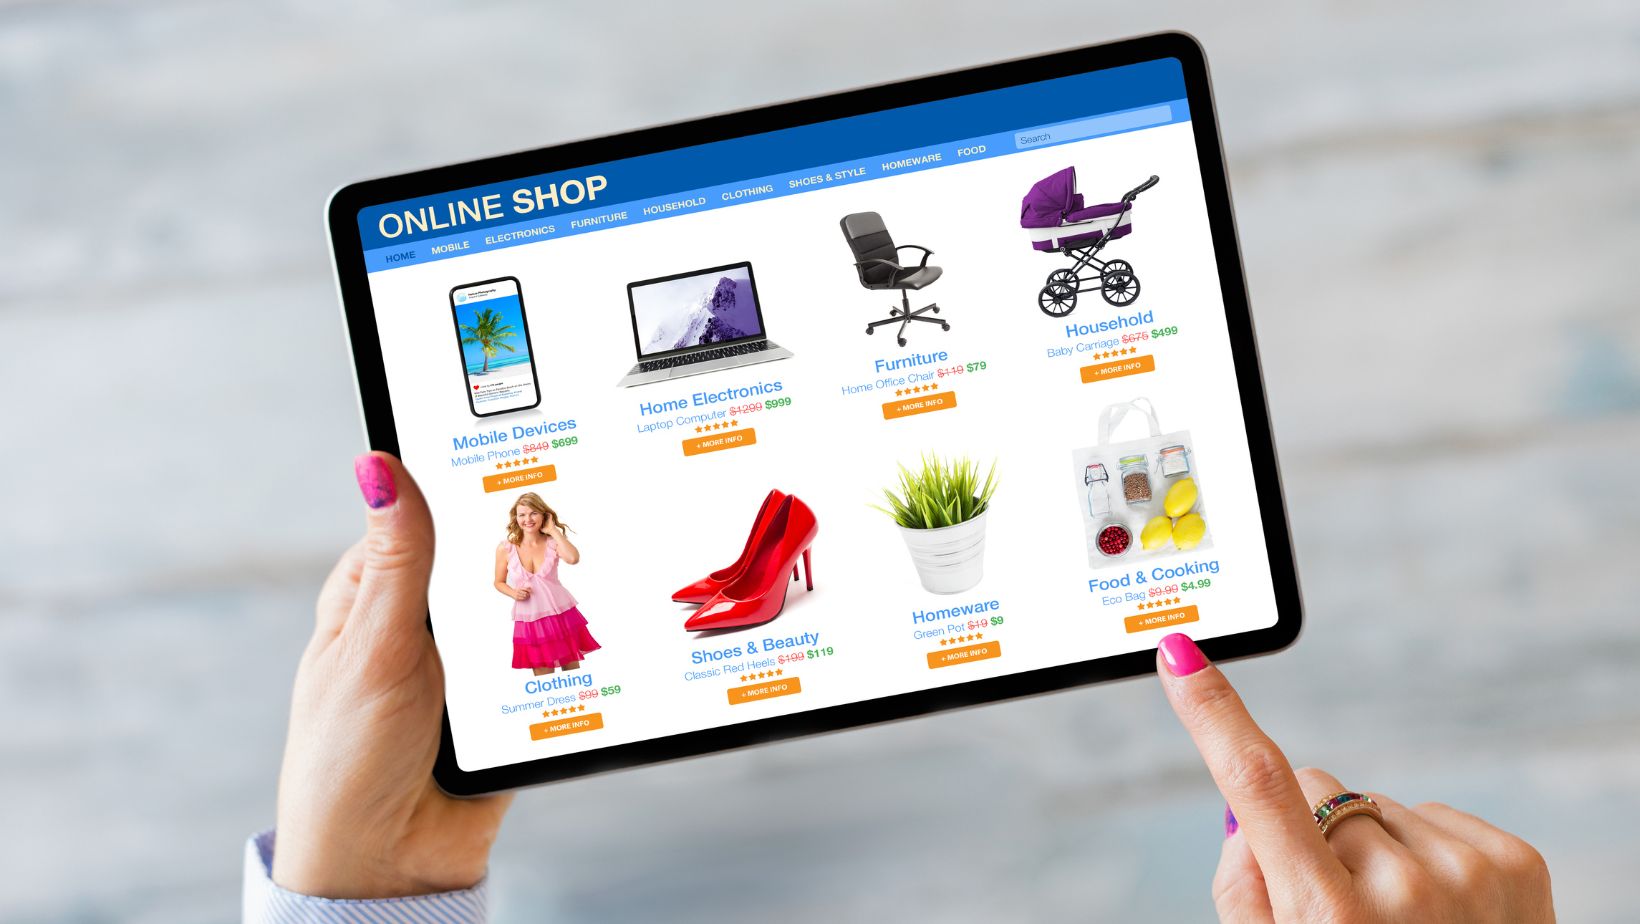 Kohls.com Online Shopping